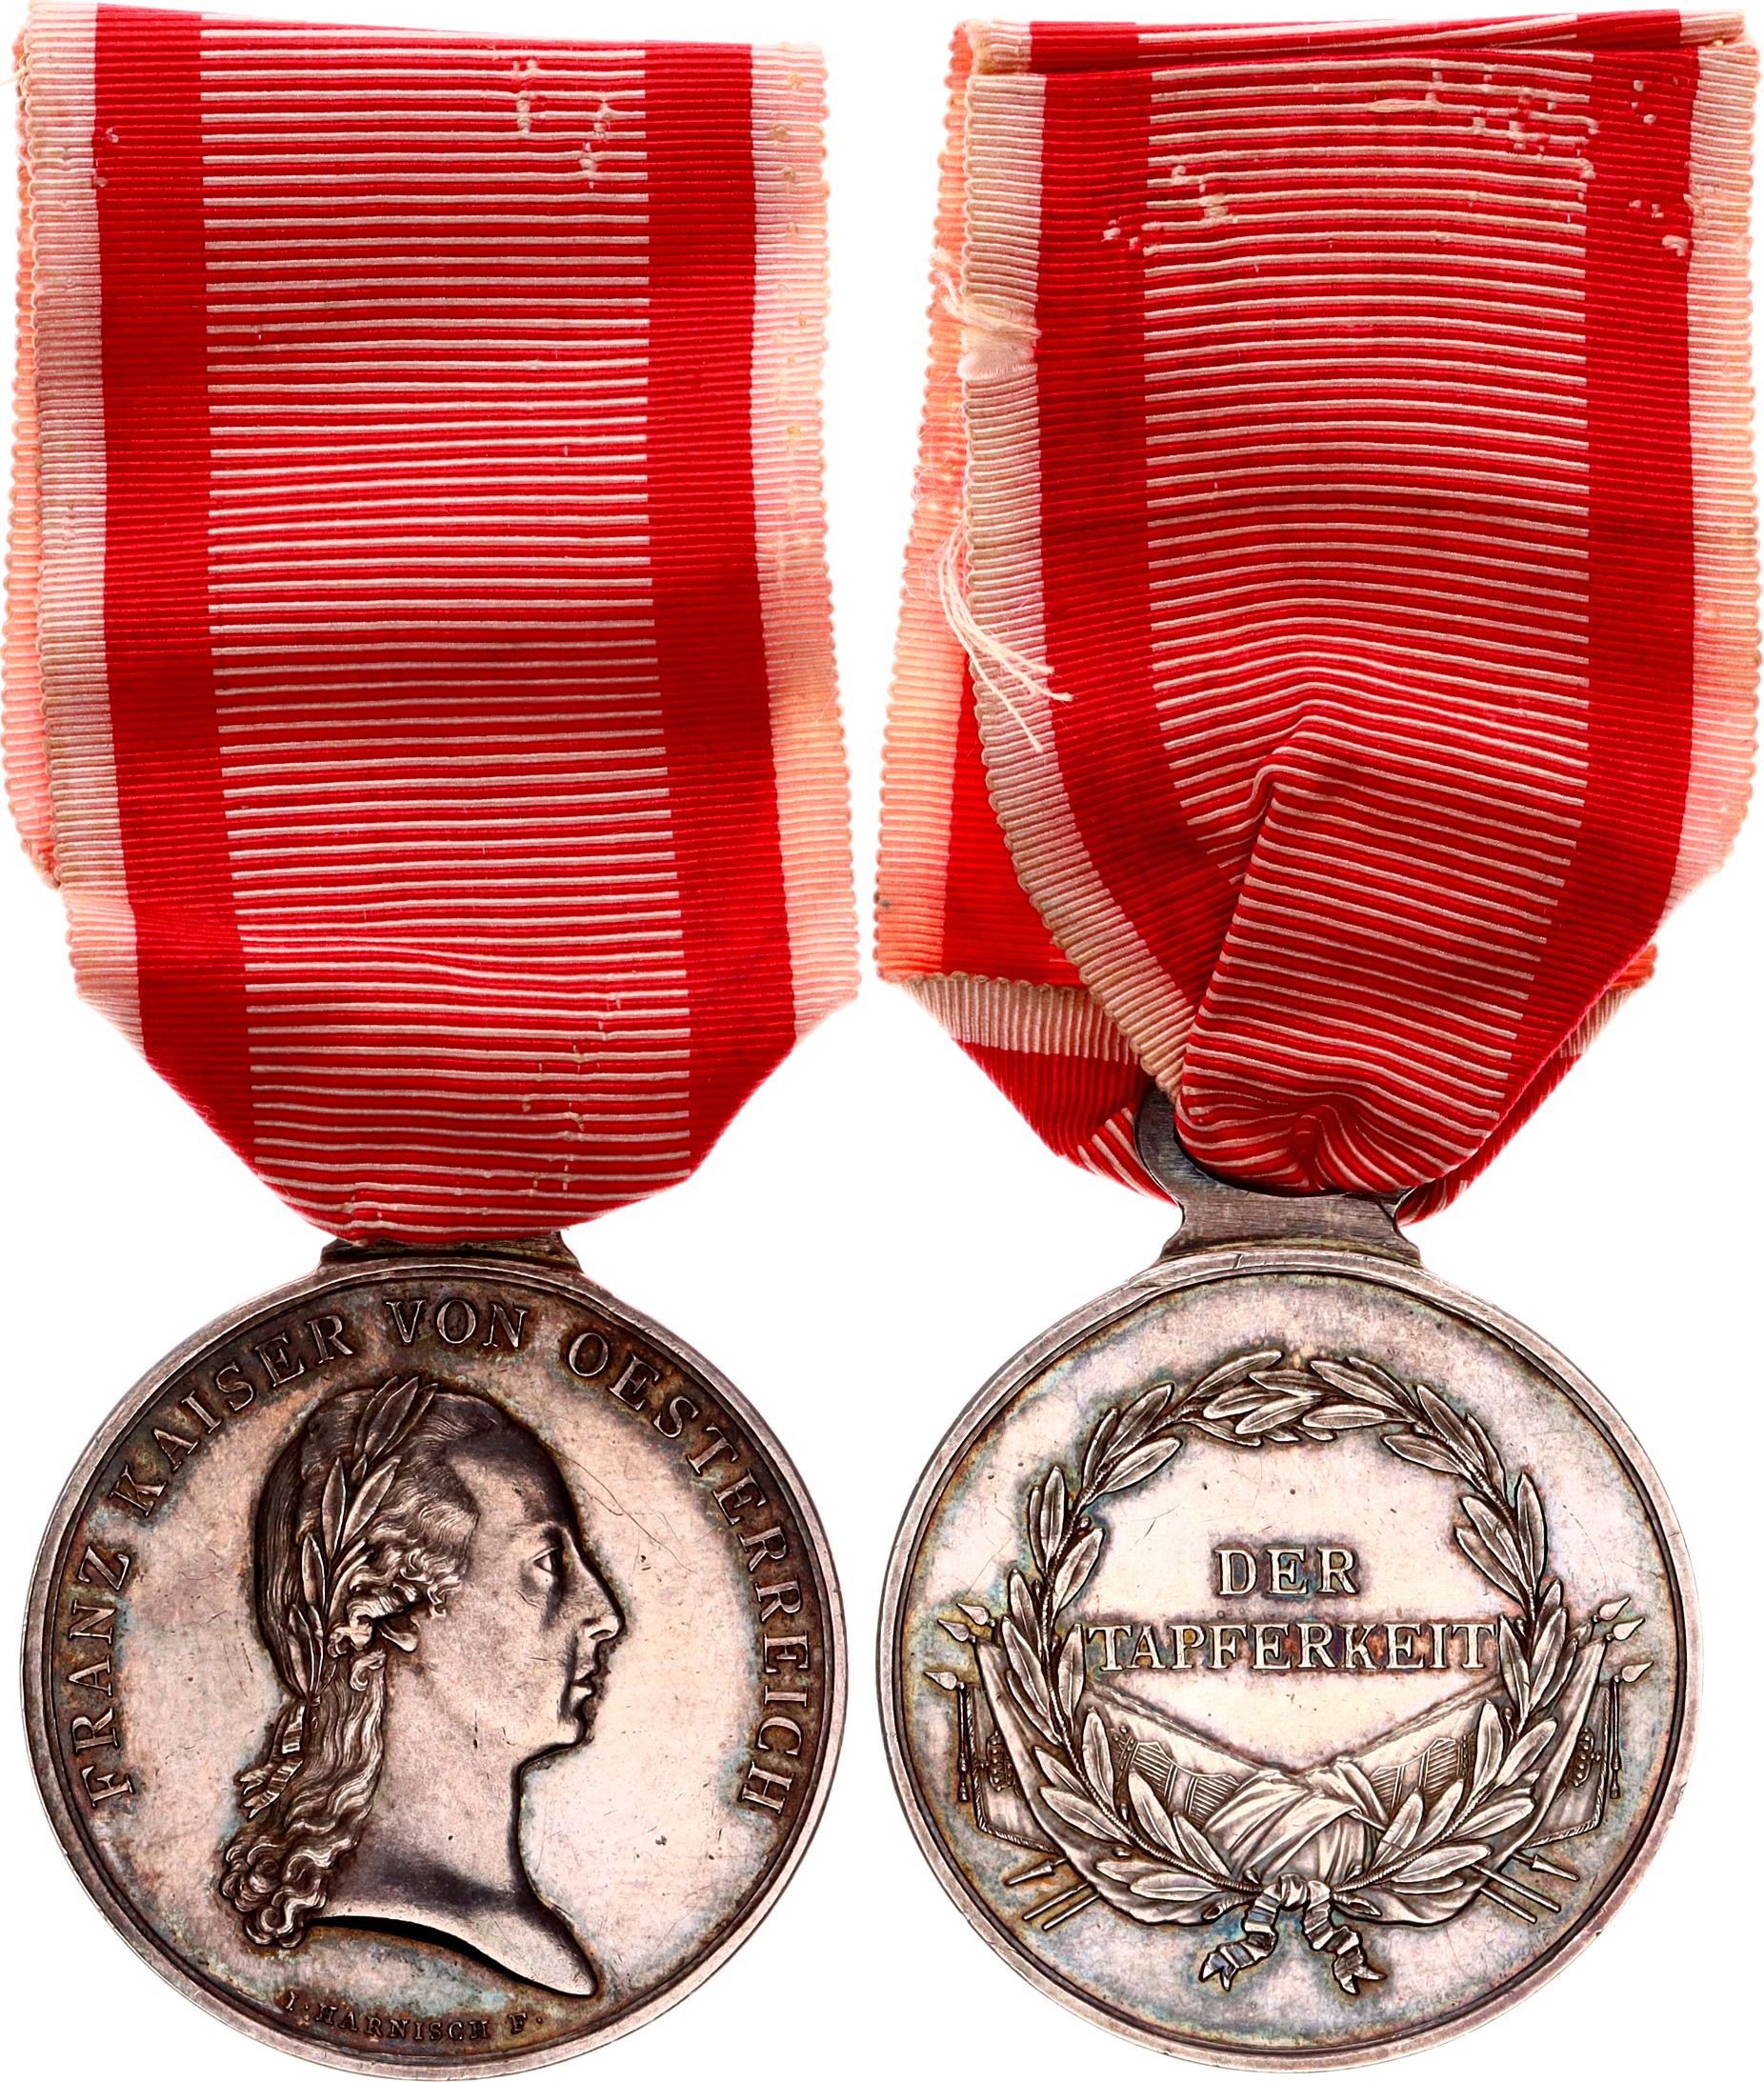 Autriche - Tapferkeitsmedaille 1 Klass «FORTITVDINI» - Médaille, Récompense,  Médaille d'argent de la bravoure austro-hongroise, 1re classe - 1917 -  Catawiki